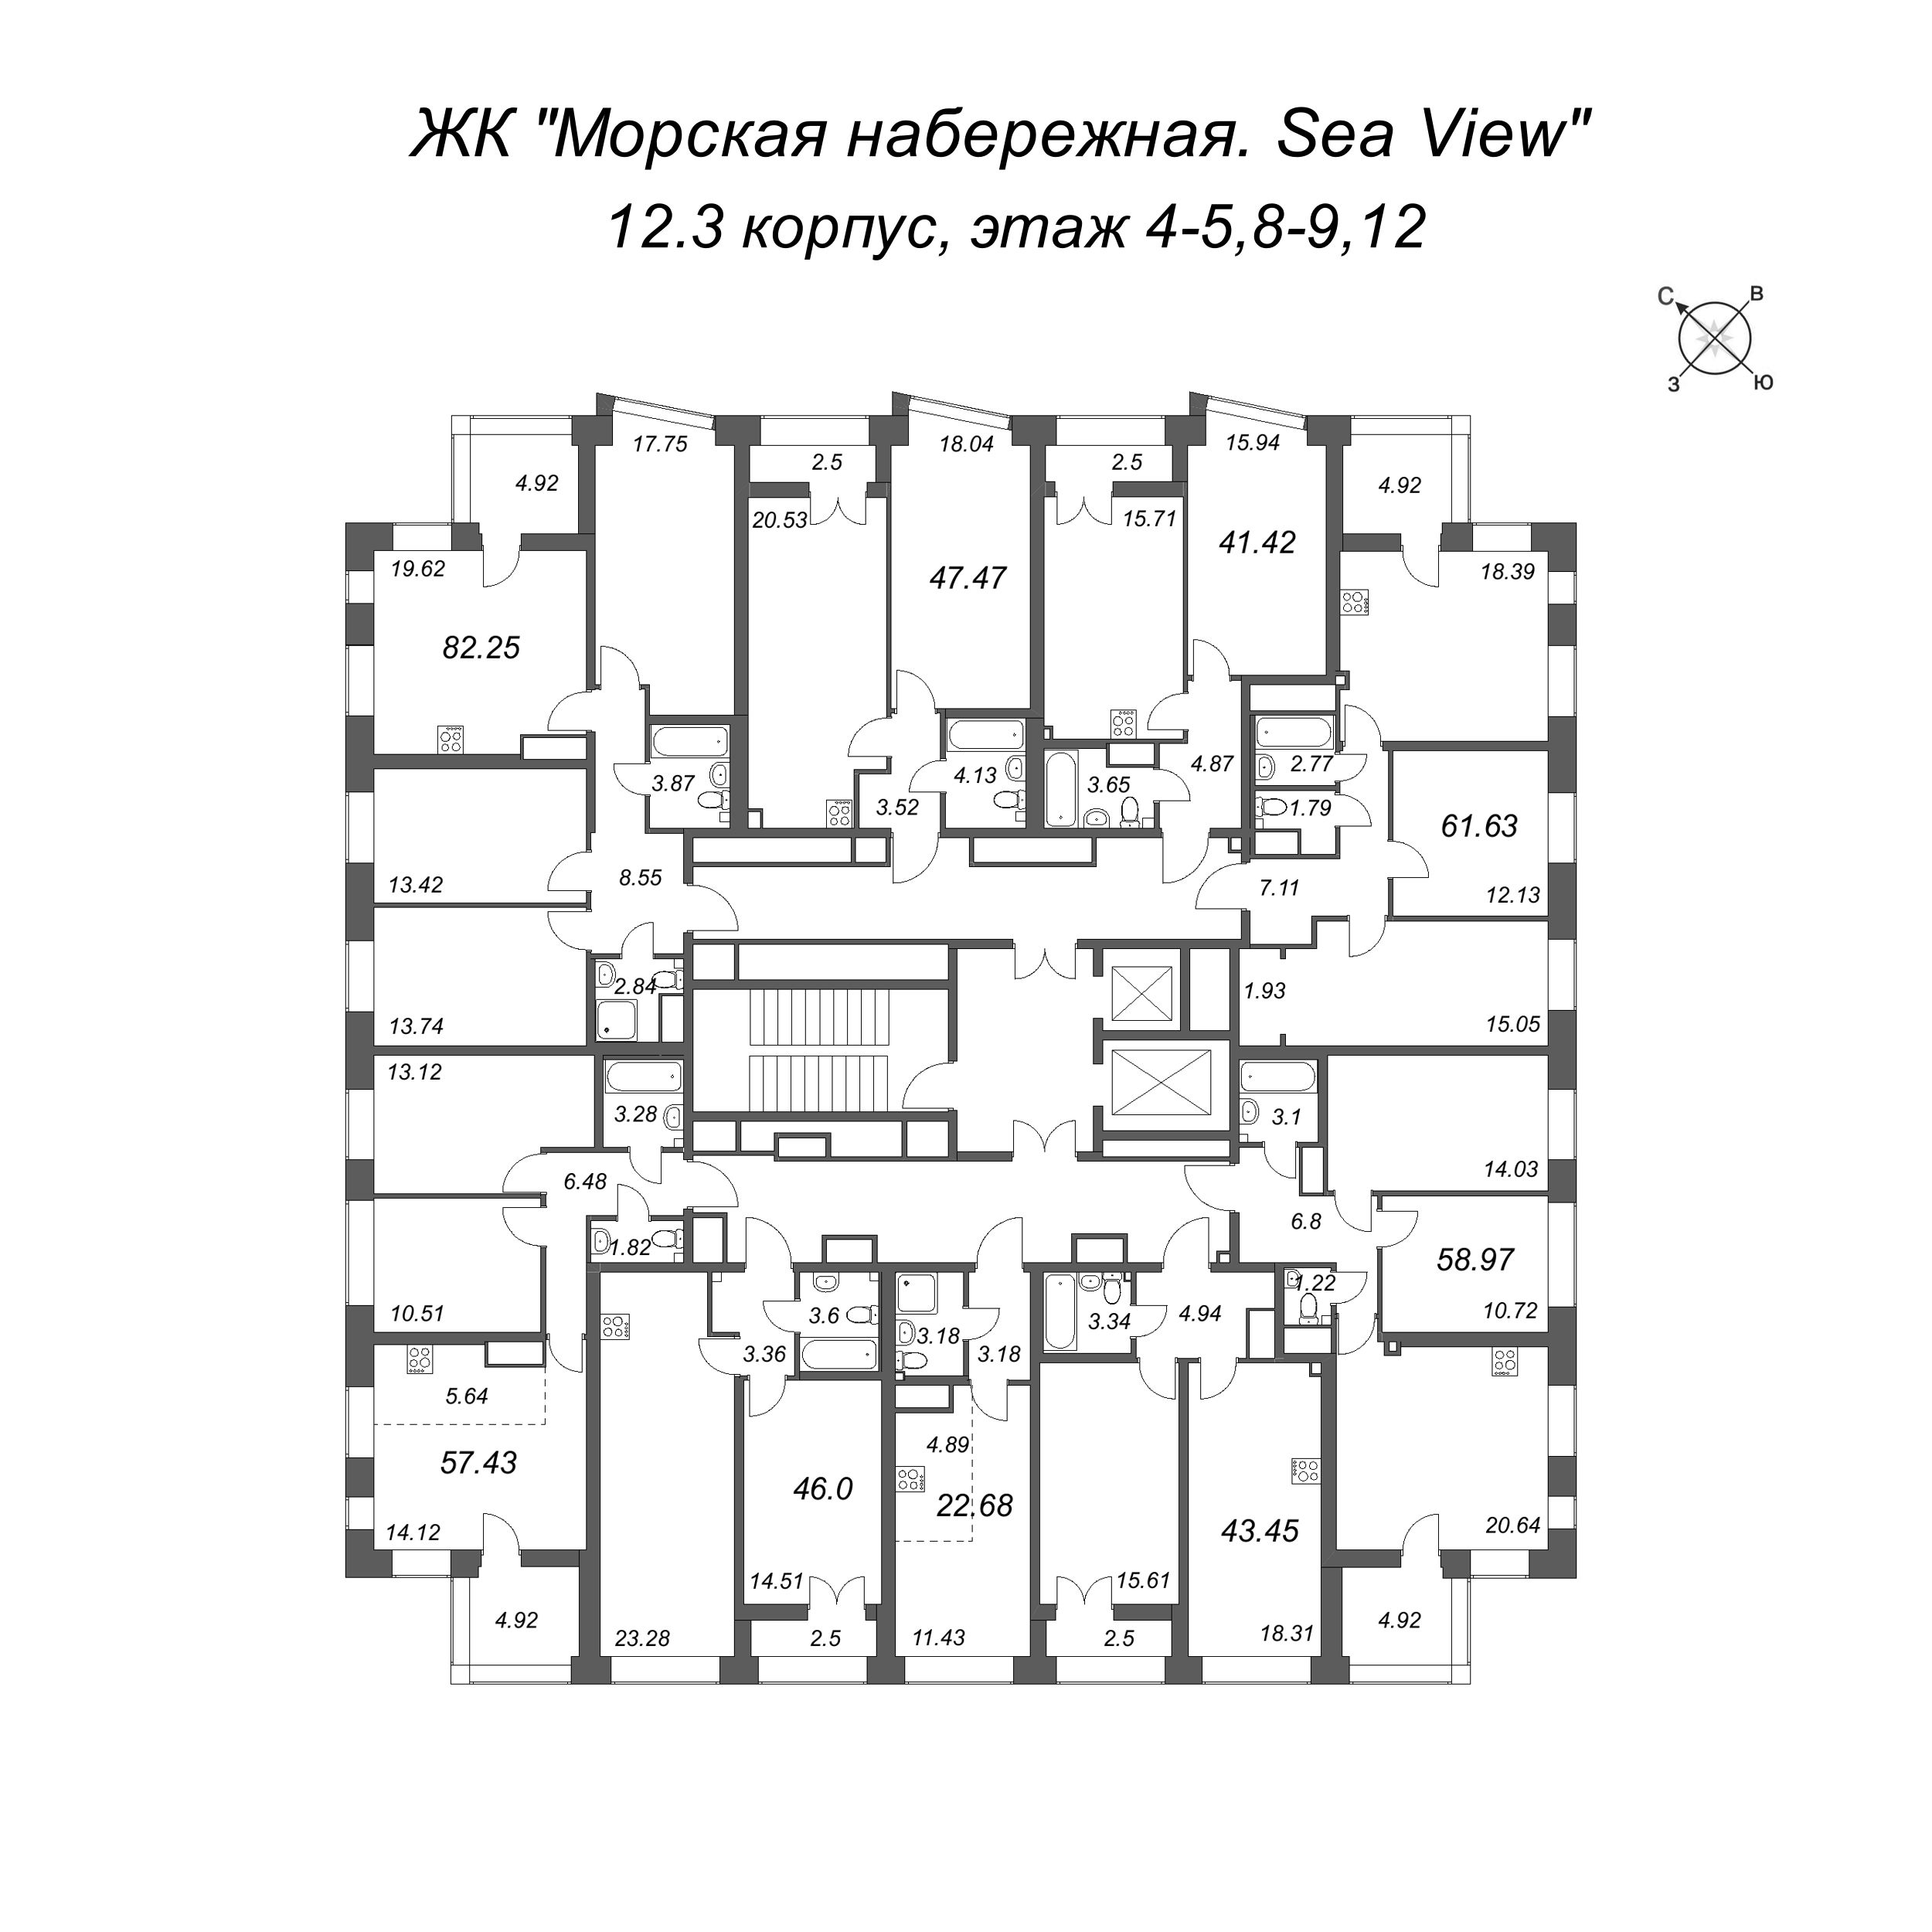 4-комнатная (Евро) квартира, 82.25 м² в ЖК "Морская набережная. SeaView" - планировка этажа